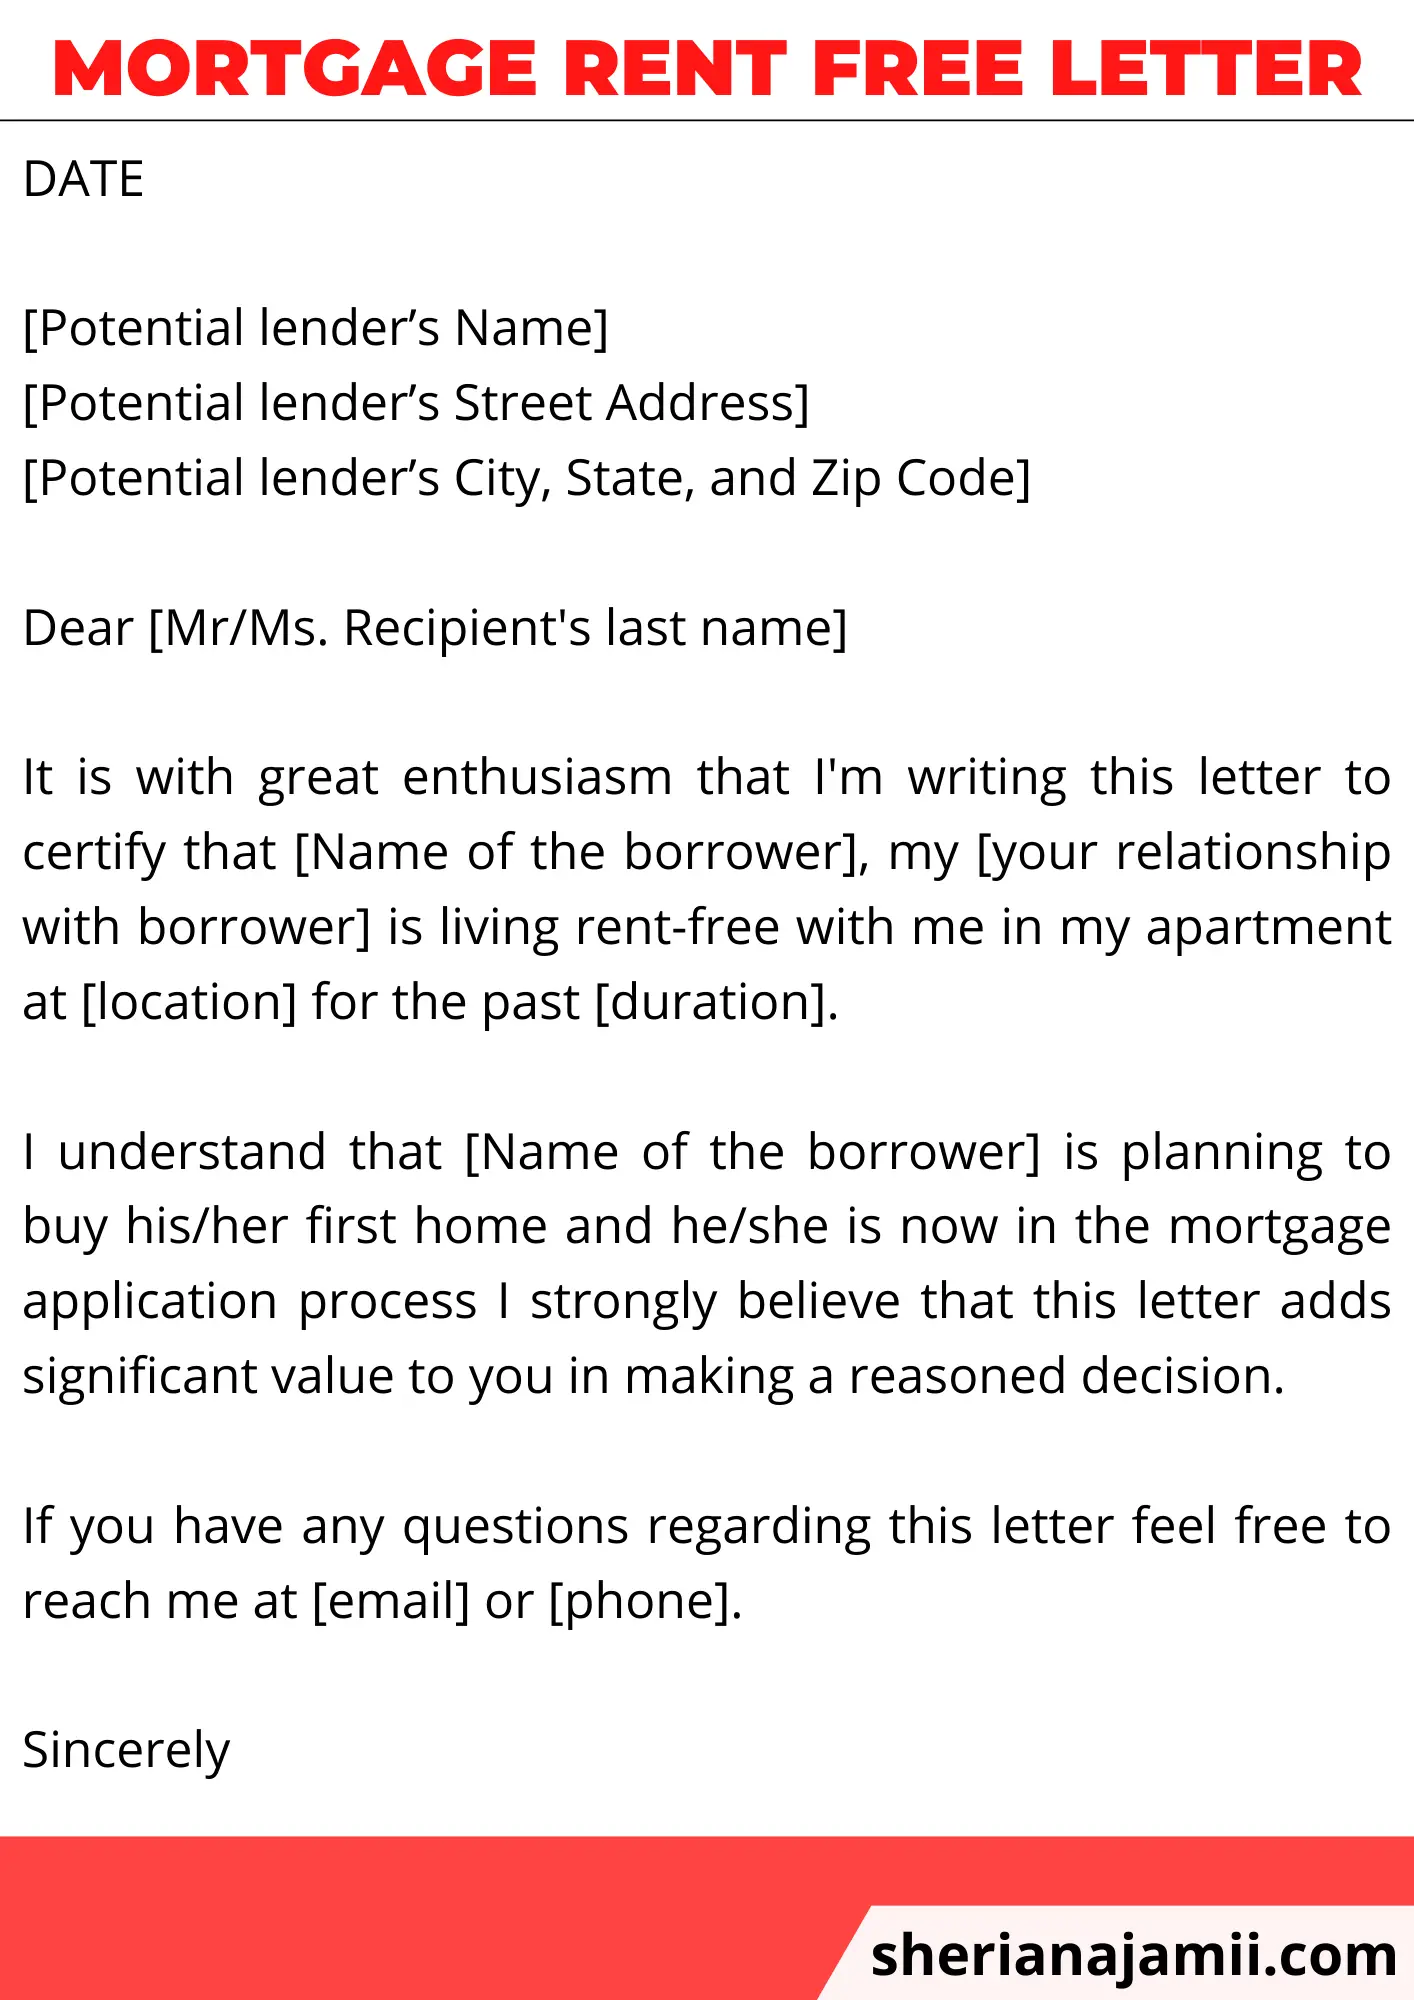 Mortgage rent free letter, Mortgage rent free letter sample,Mortgage rent free letter template,Mortgage rent free letter example